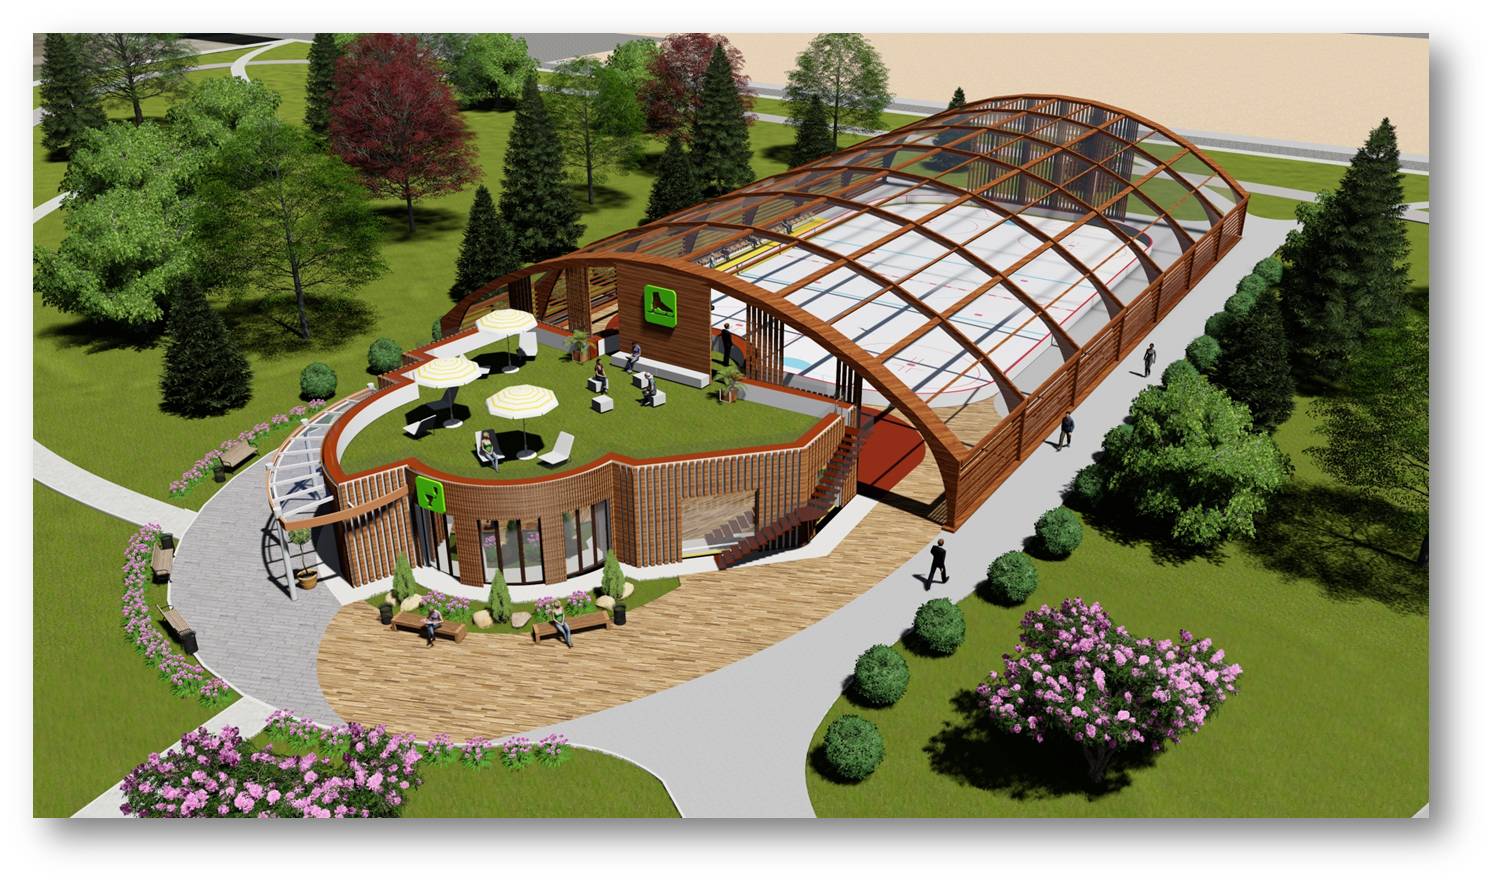 Каток с искусственным покрытием планируют построить в могилевском парке в Подниколье в 2020 году